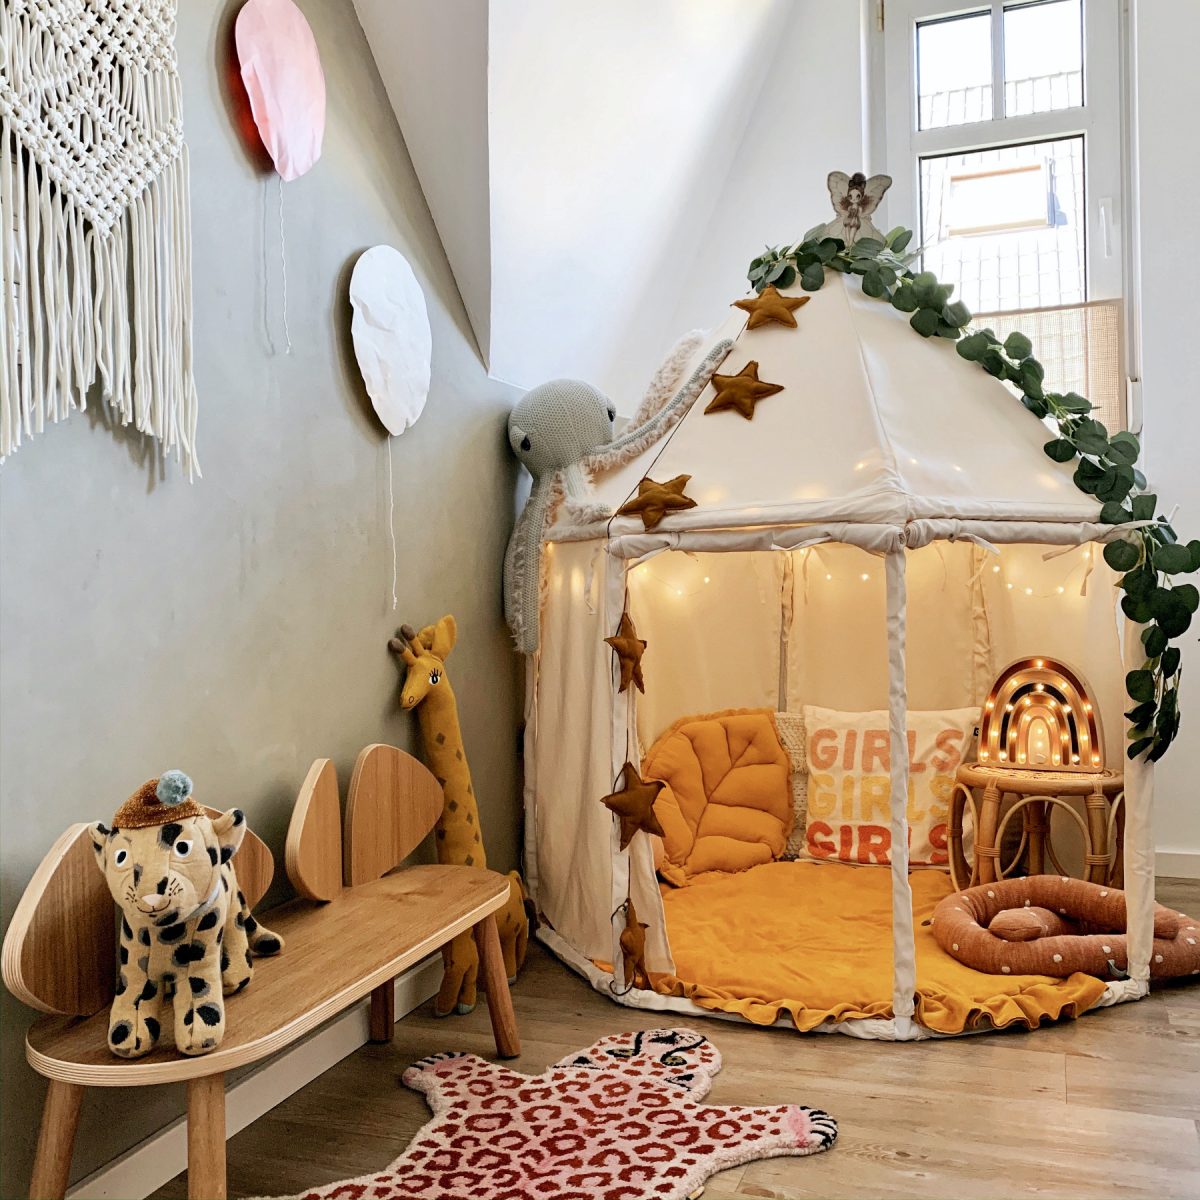 Fantasyroom Blog: Die schönsten Instagram Kinderzimmer - Kuschelecke mit Pavillon